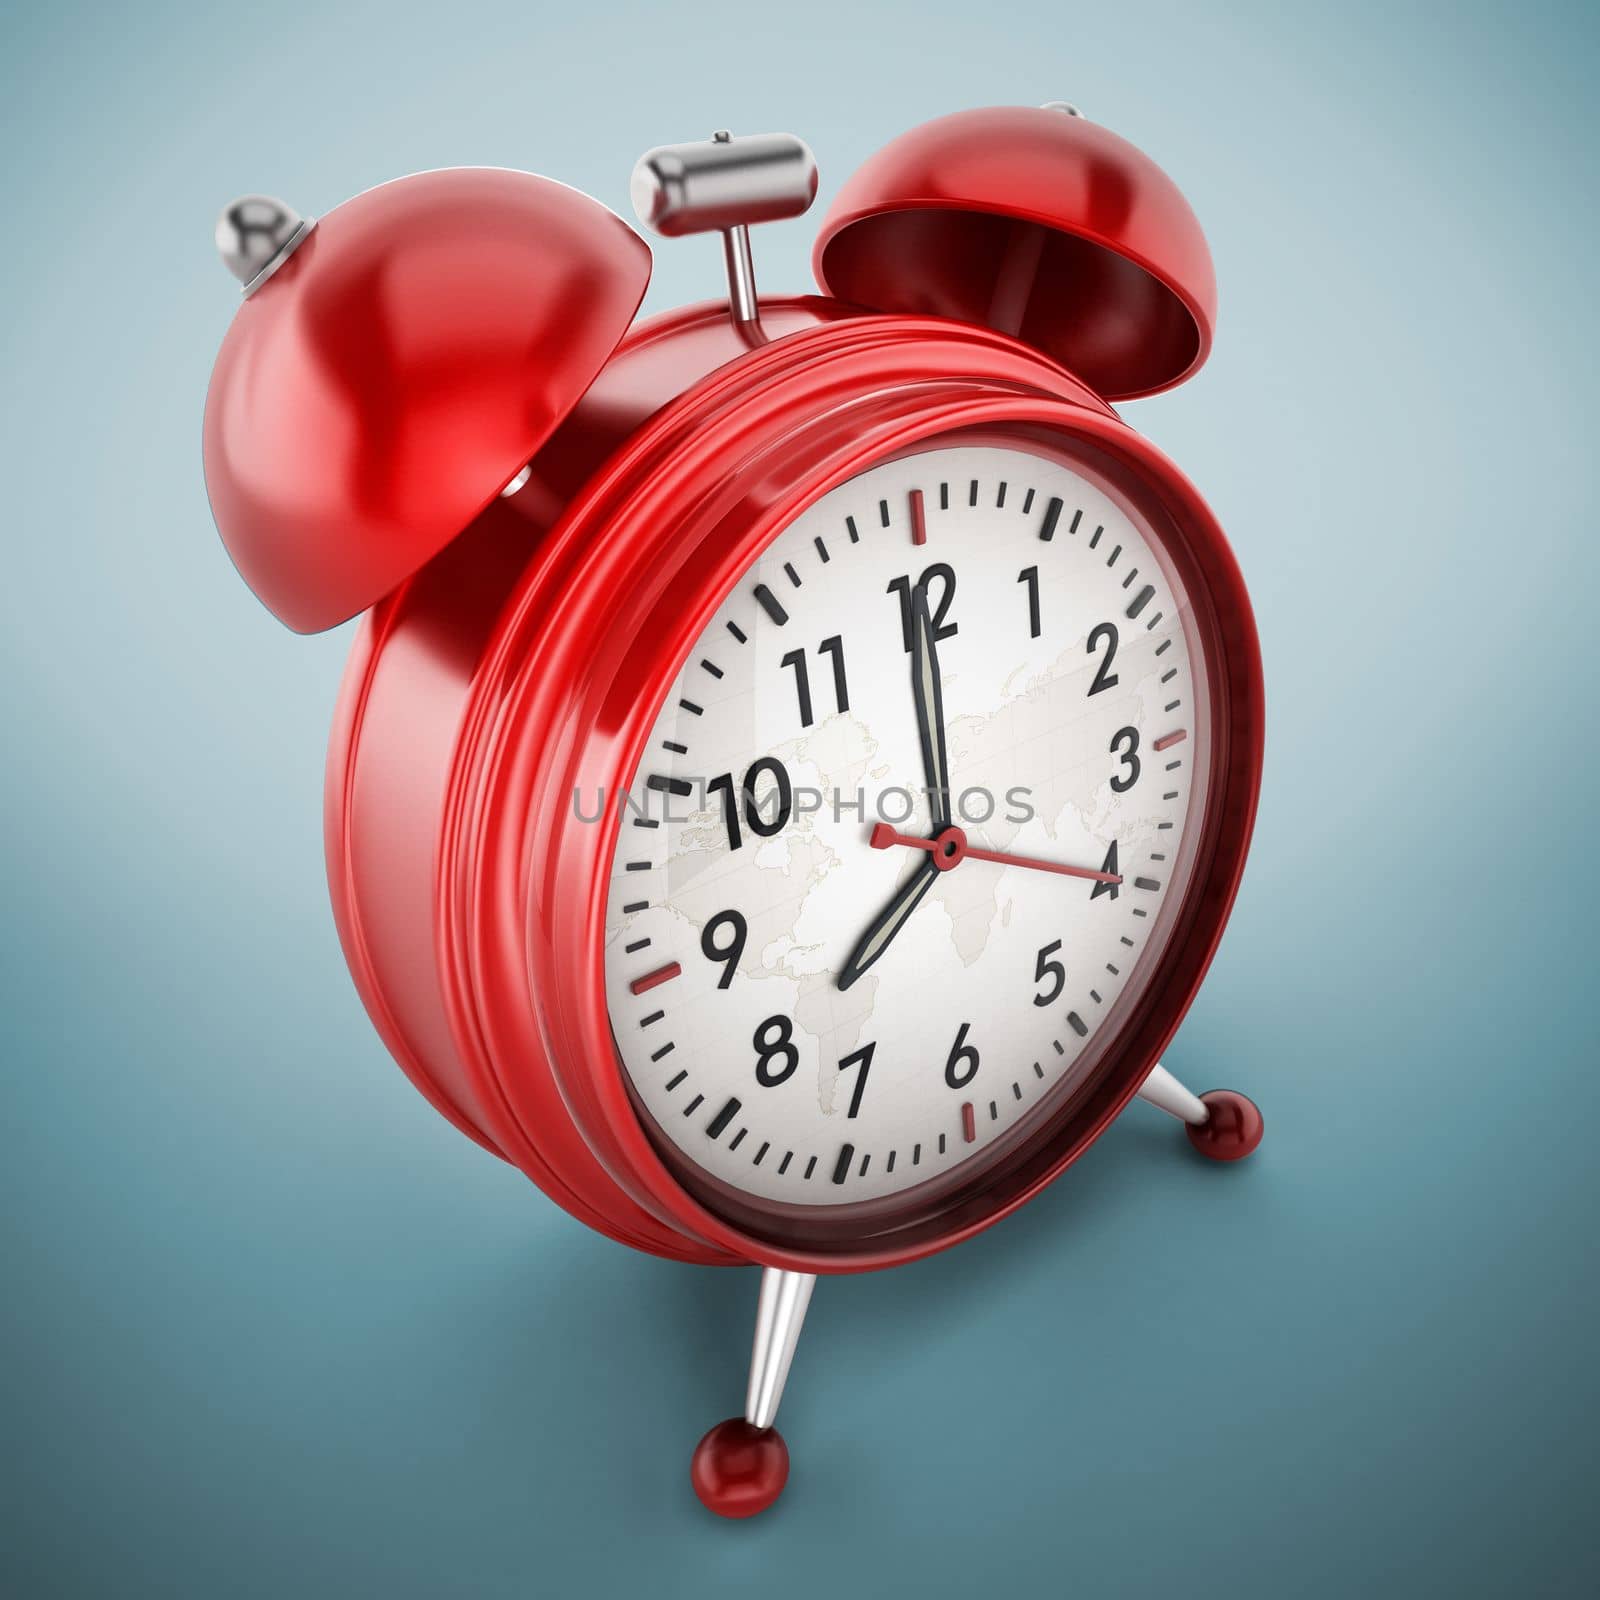 Red alarm clock on blue background. 3D illustration.